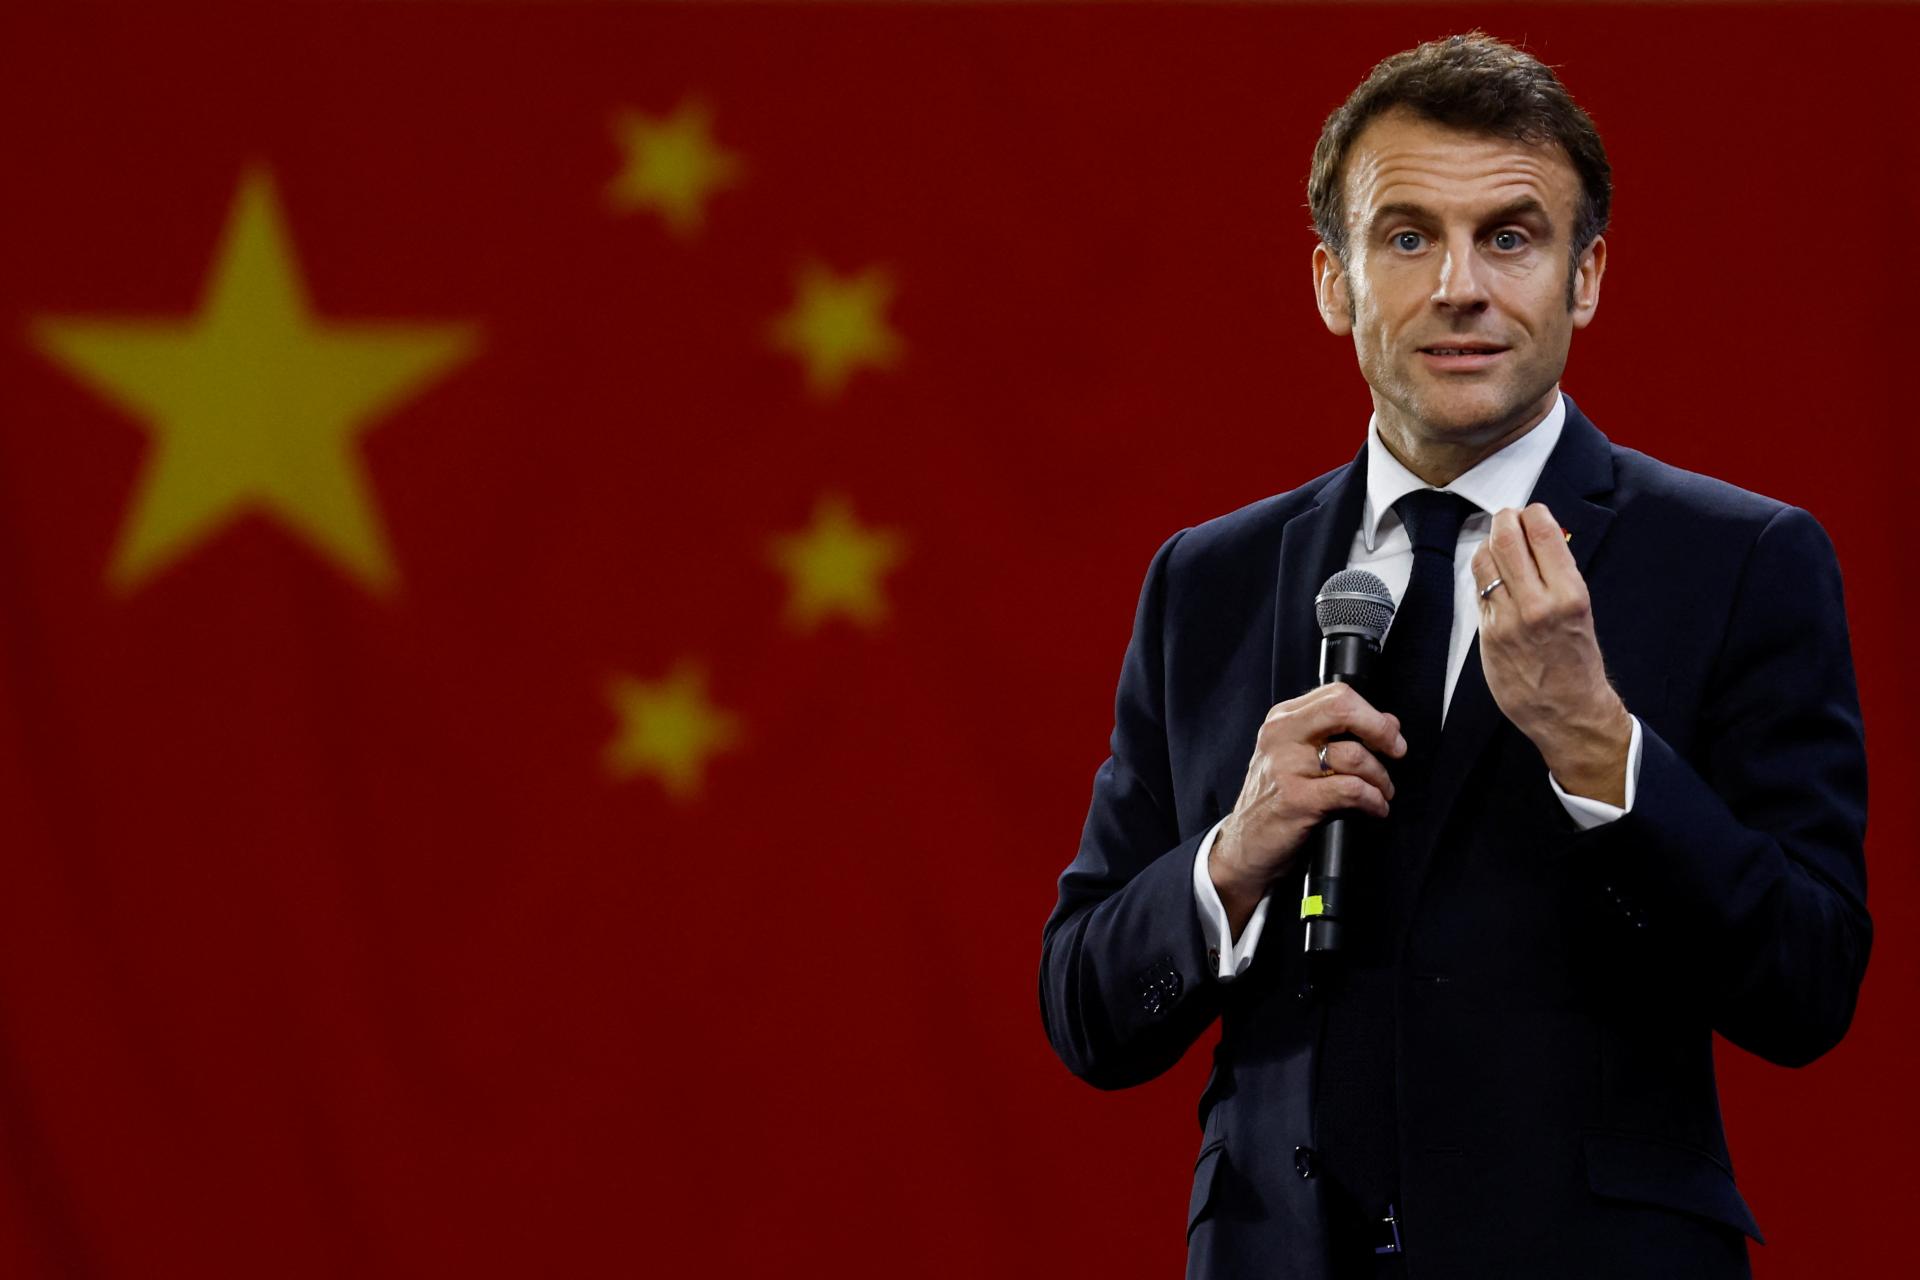 Macron návštevou Číny naštval celú Európu. Jeho slová o vazalstve voči USA spustili lavínu kritiky